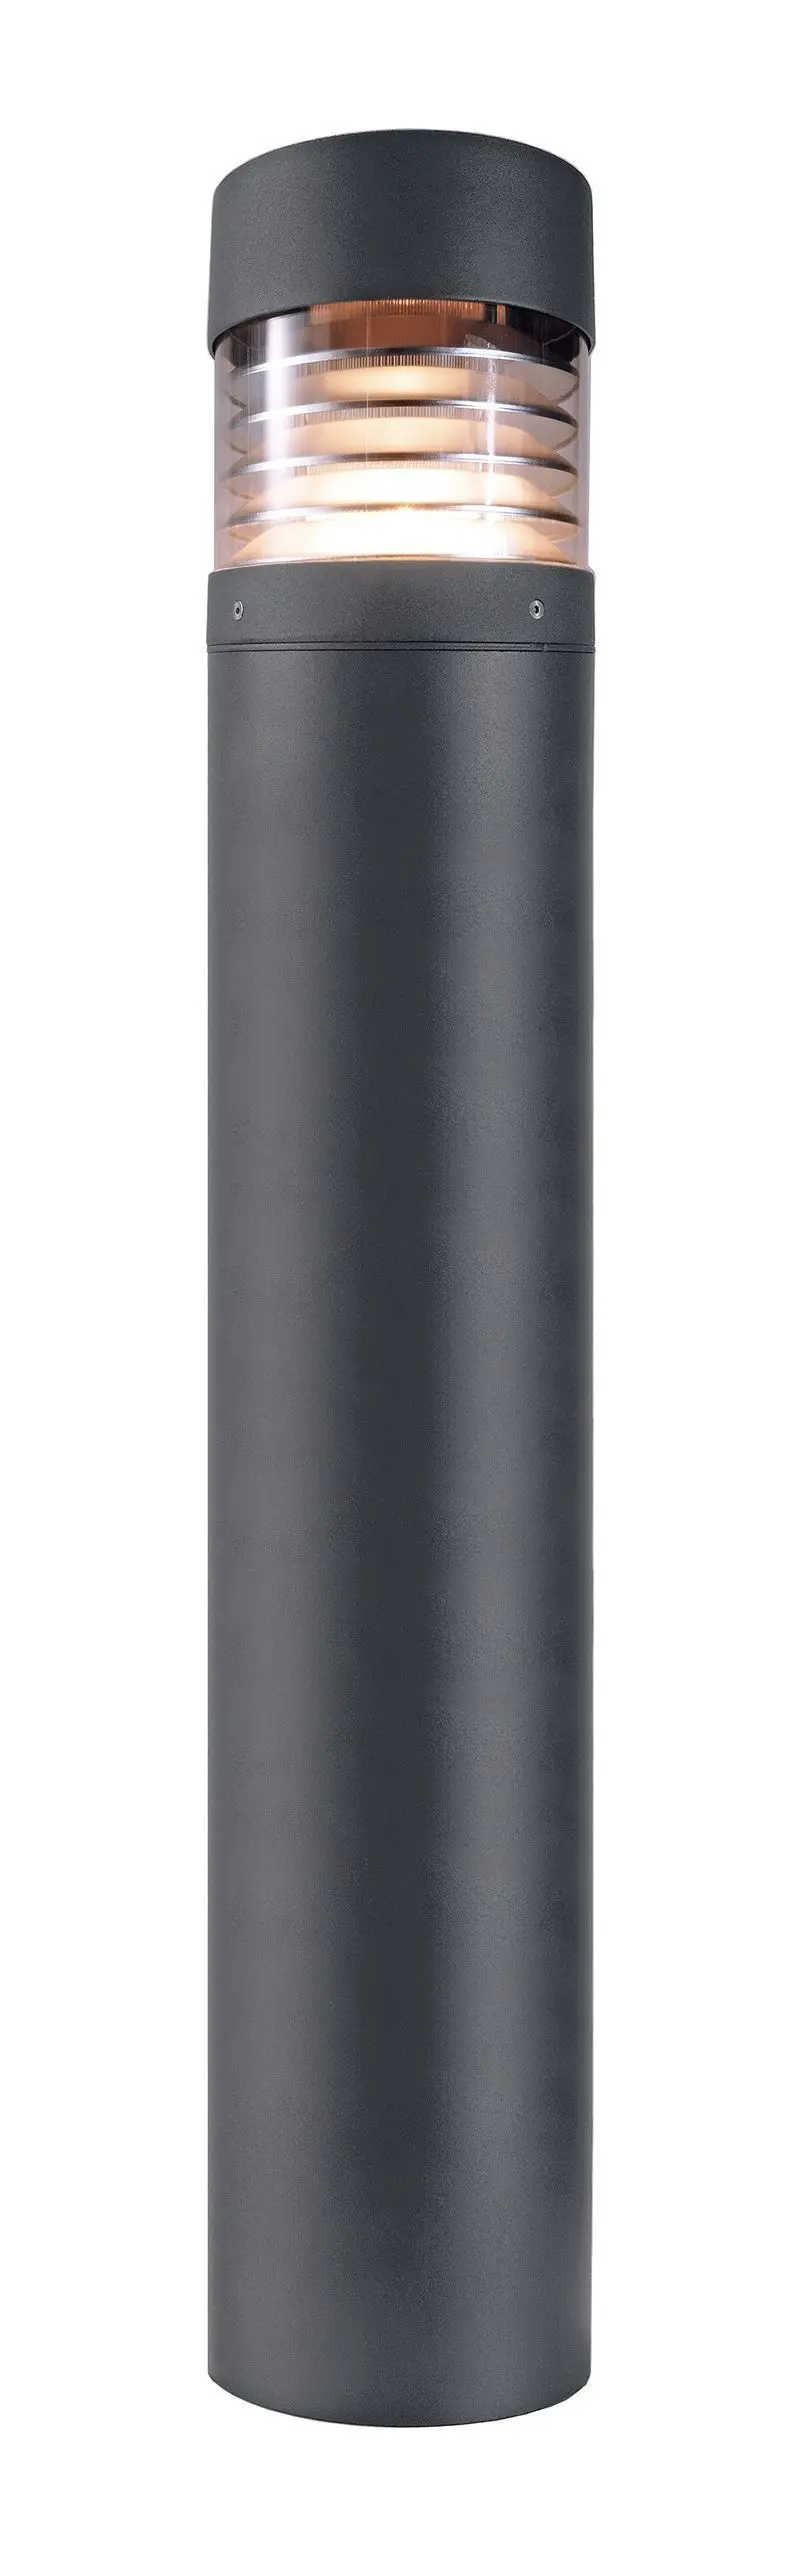 LED-Pollerleuchte Ortis elegant, dunkelgrau, 100cm